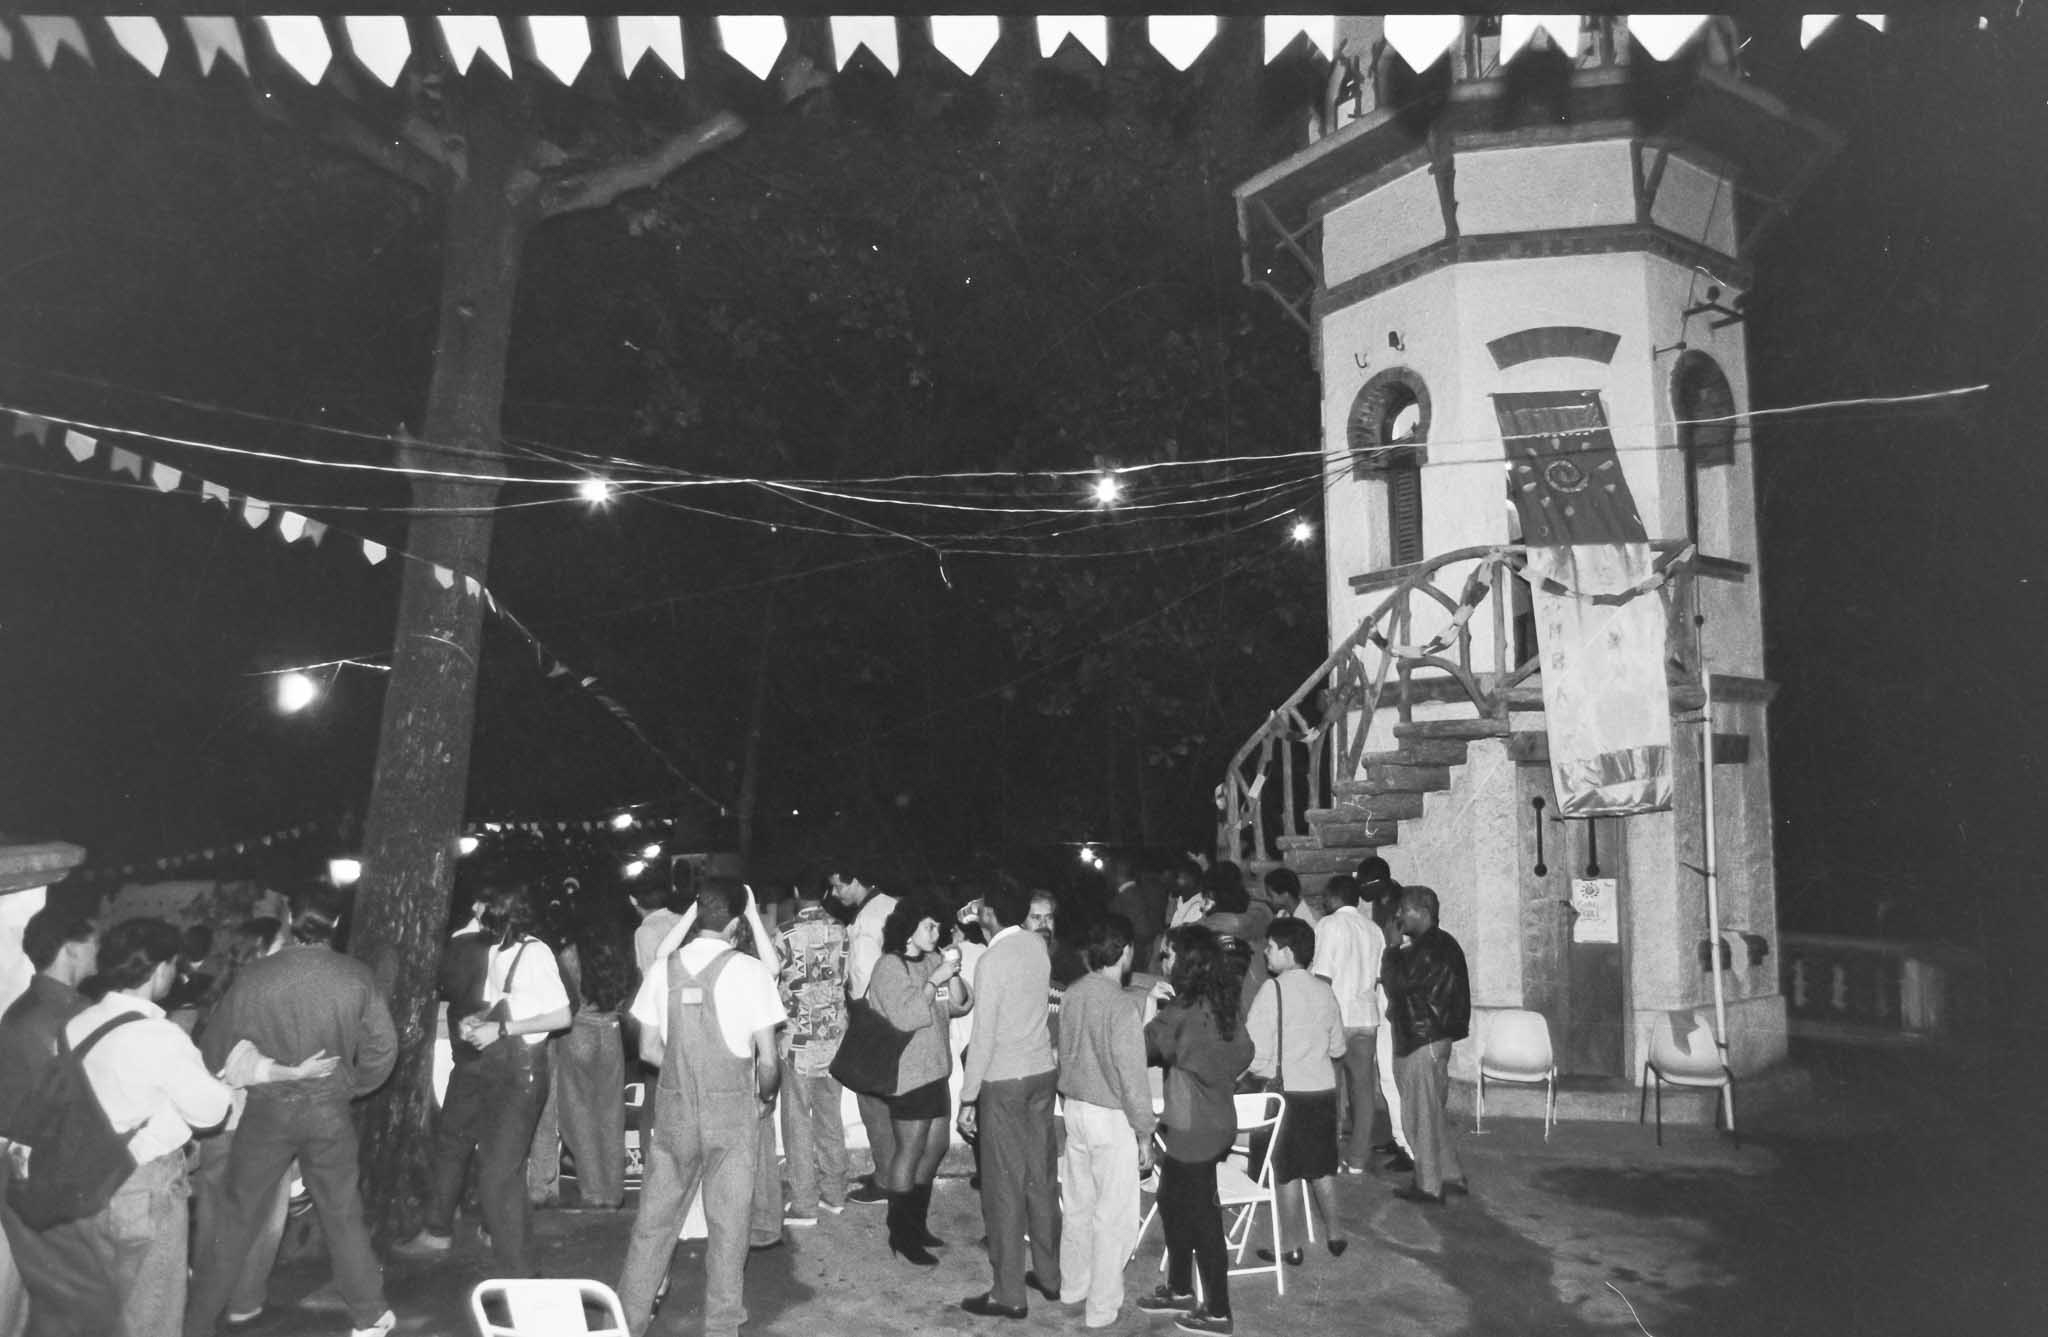 Imagem da Torre Central do Pombal com várias pessoas ao redor, em uma comemoração